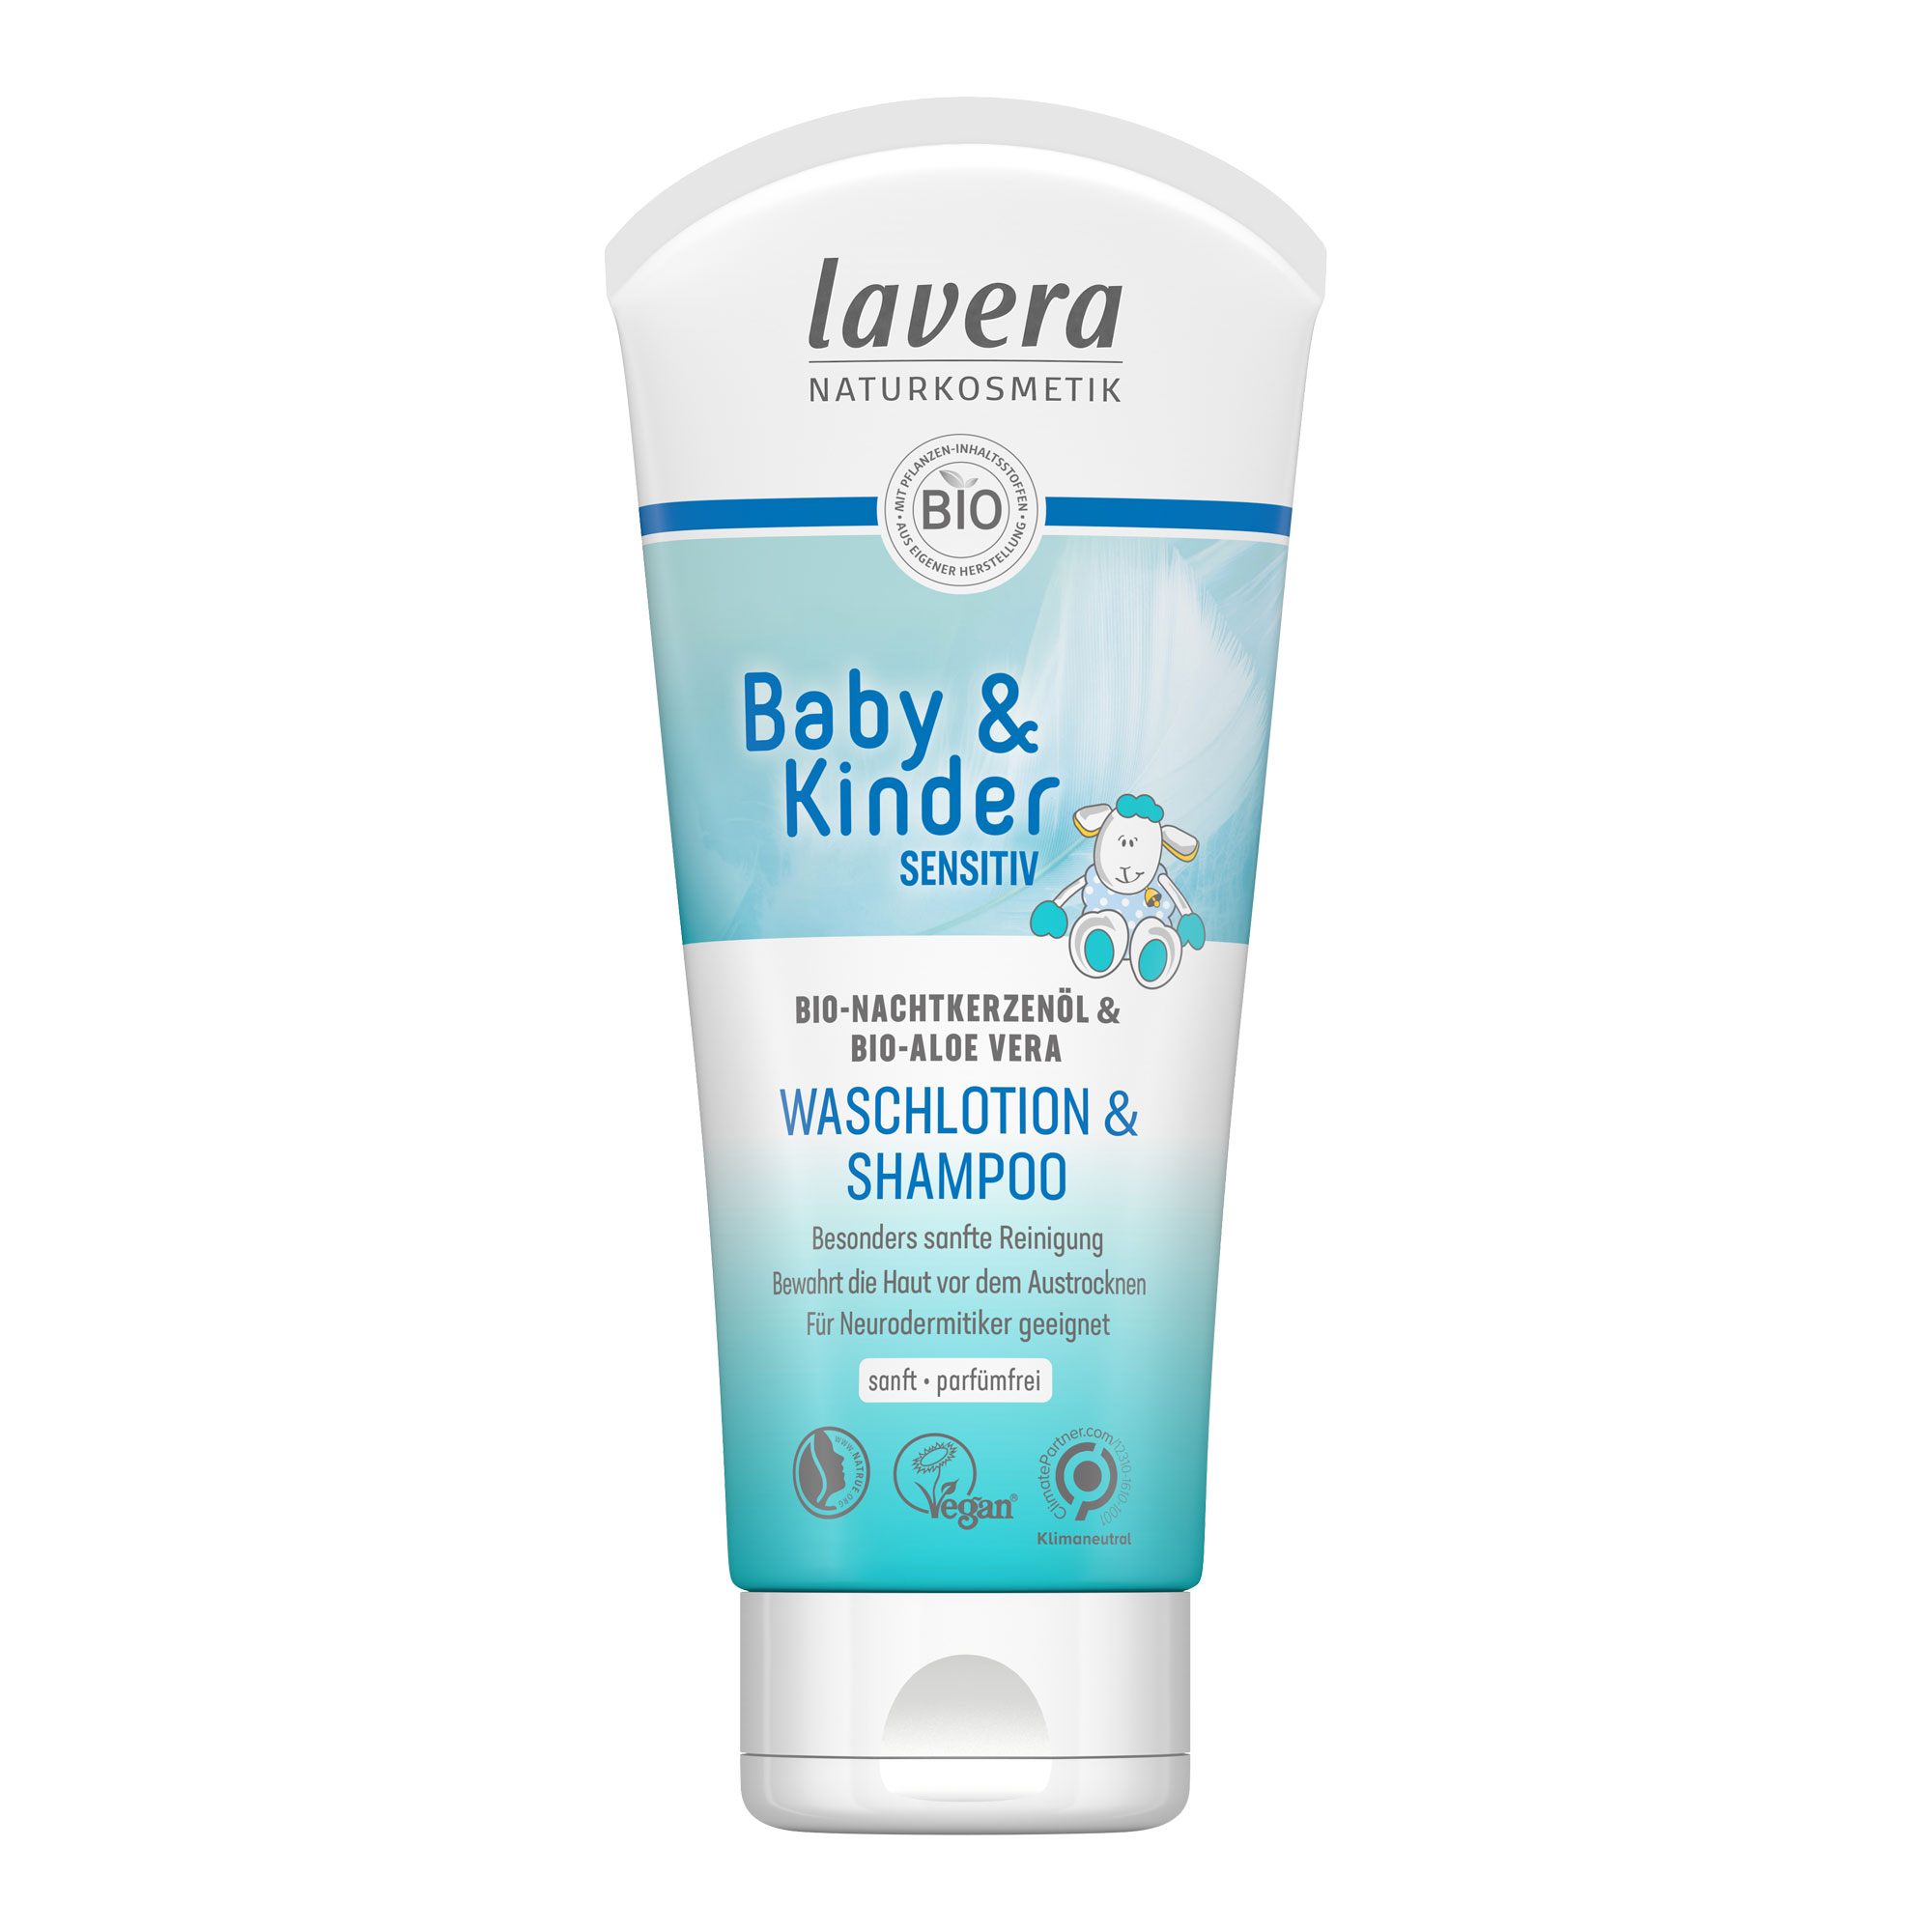 Sanfte Reinigung sensibler Baby- und Kinderhaut. Bewahrt die Haut vor dem Austrocknen. Parfümfrei.